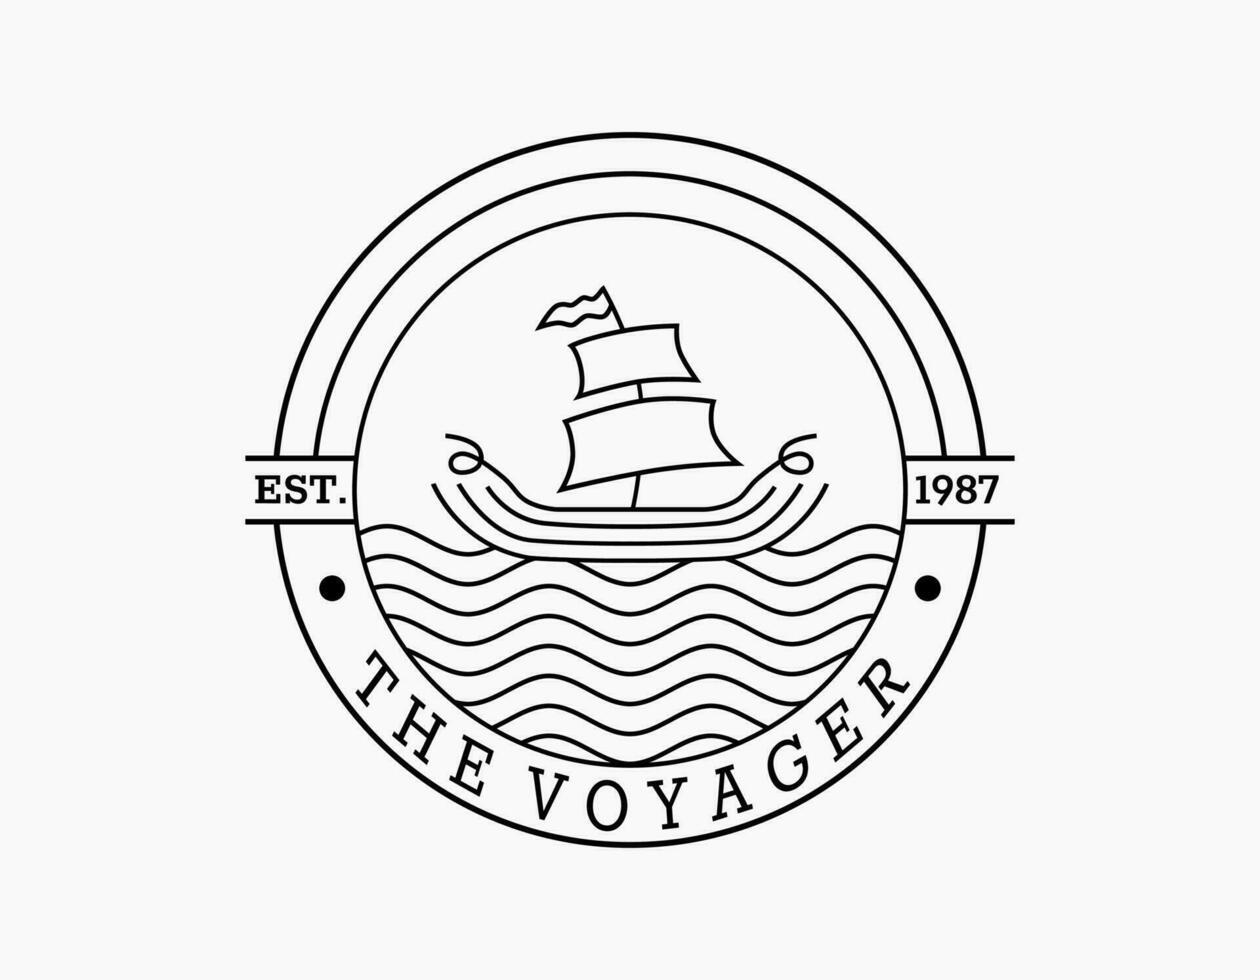 wijnoogst zeilboot logo. de reiziger retro van een zeil boot. de circulaire logo is ontworpen met boot en golvend oceaan. elegant logo voor koffie, strand, bedrijf, reis, museum, zeevruchten, marinier, visser. vector